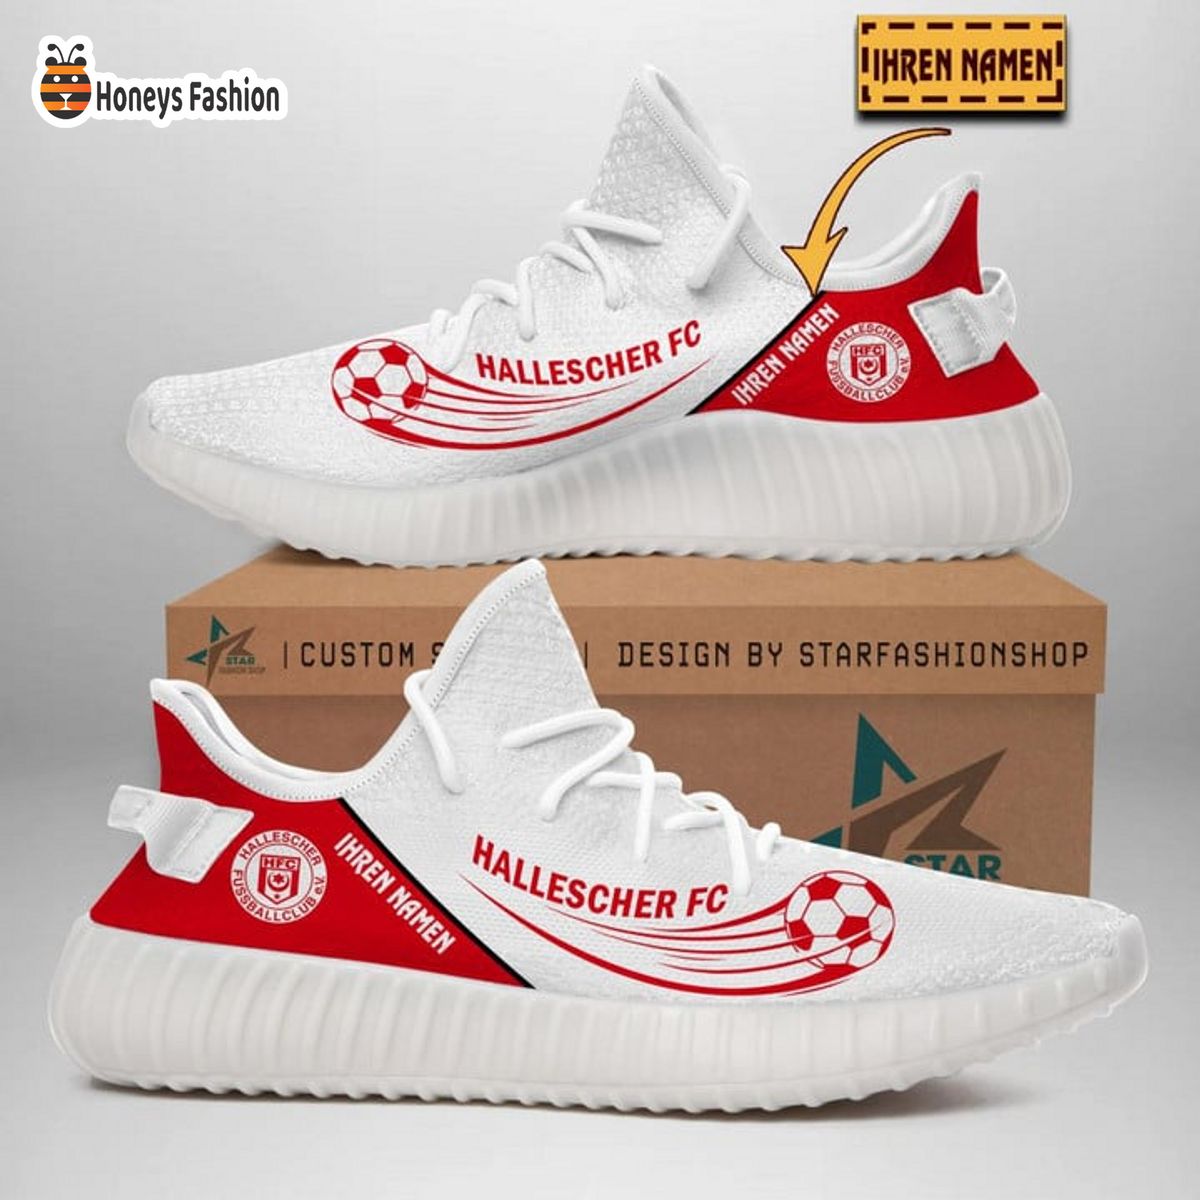 Hallescher FC personalisiert yeezy sneaker